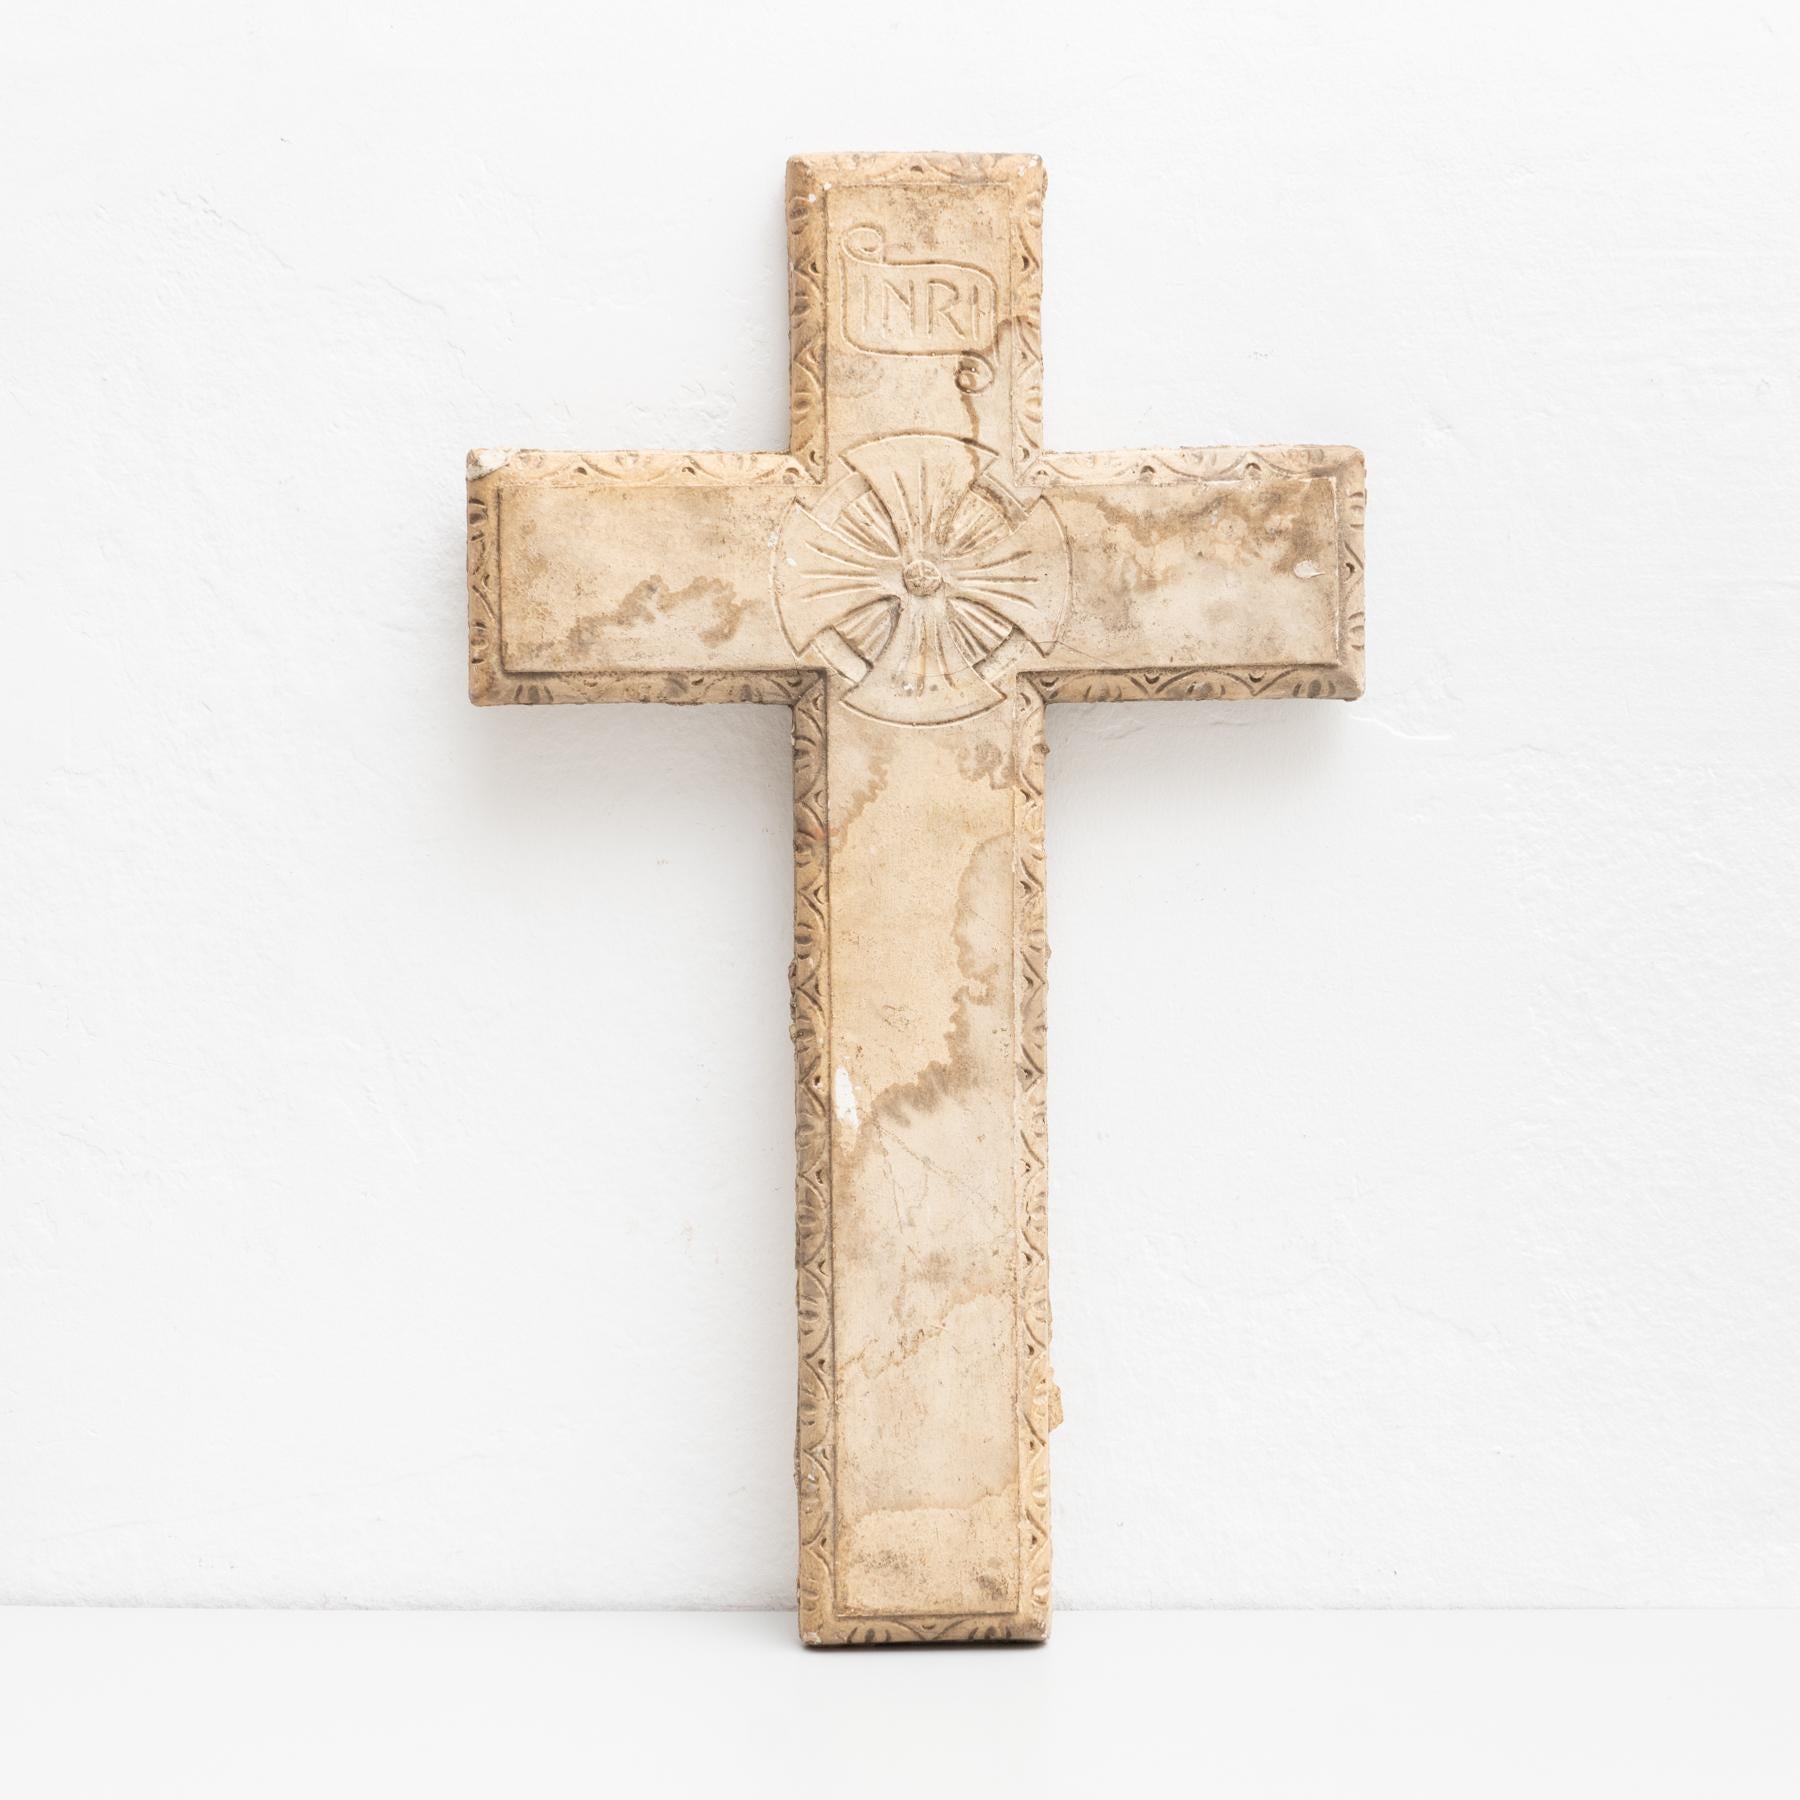 Œuvre d'art murale religieuse traditionnelle en plâtre représentant une croix.

Fabriqué dans un atelier catalan traditionnel à Olot, en Espagne, vers 1950.

Olot a une longue tradition dans la production de sculptures et d'images religieuses.